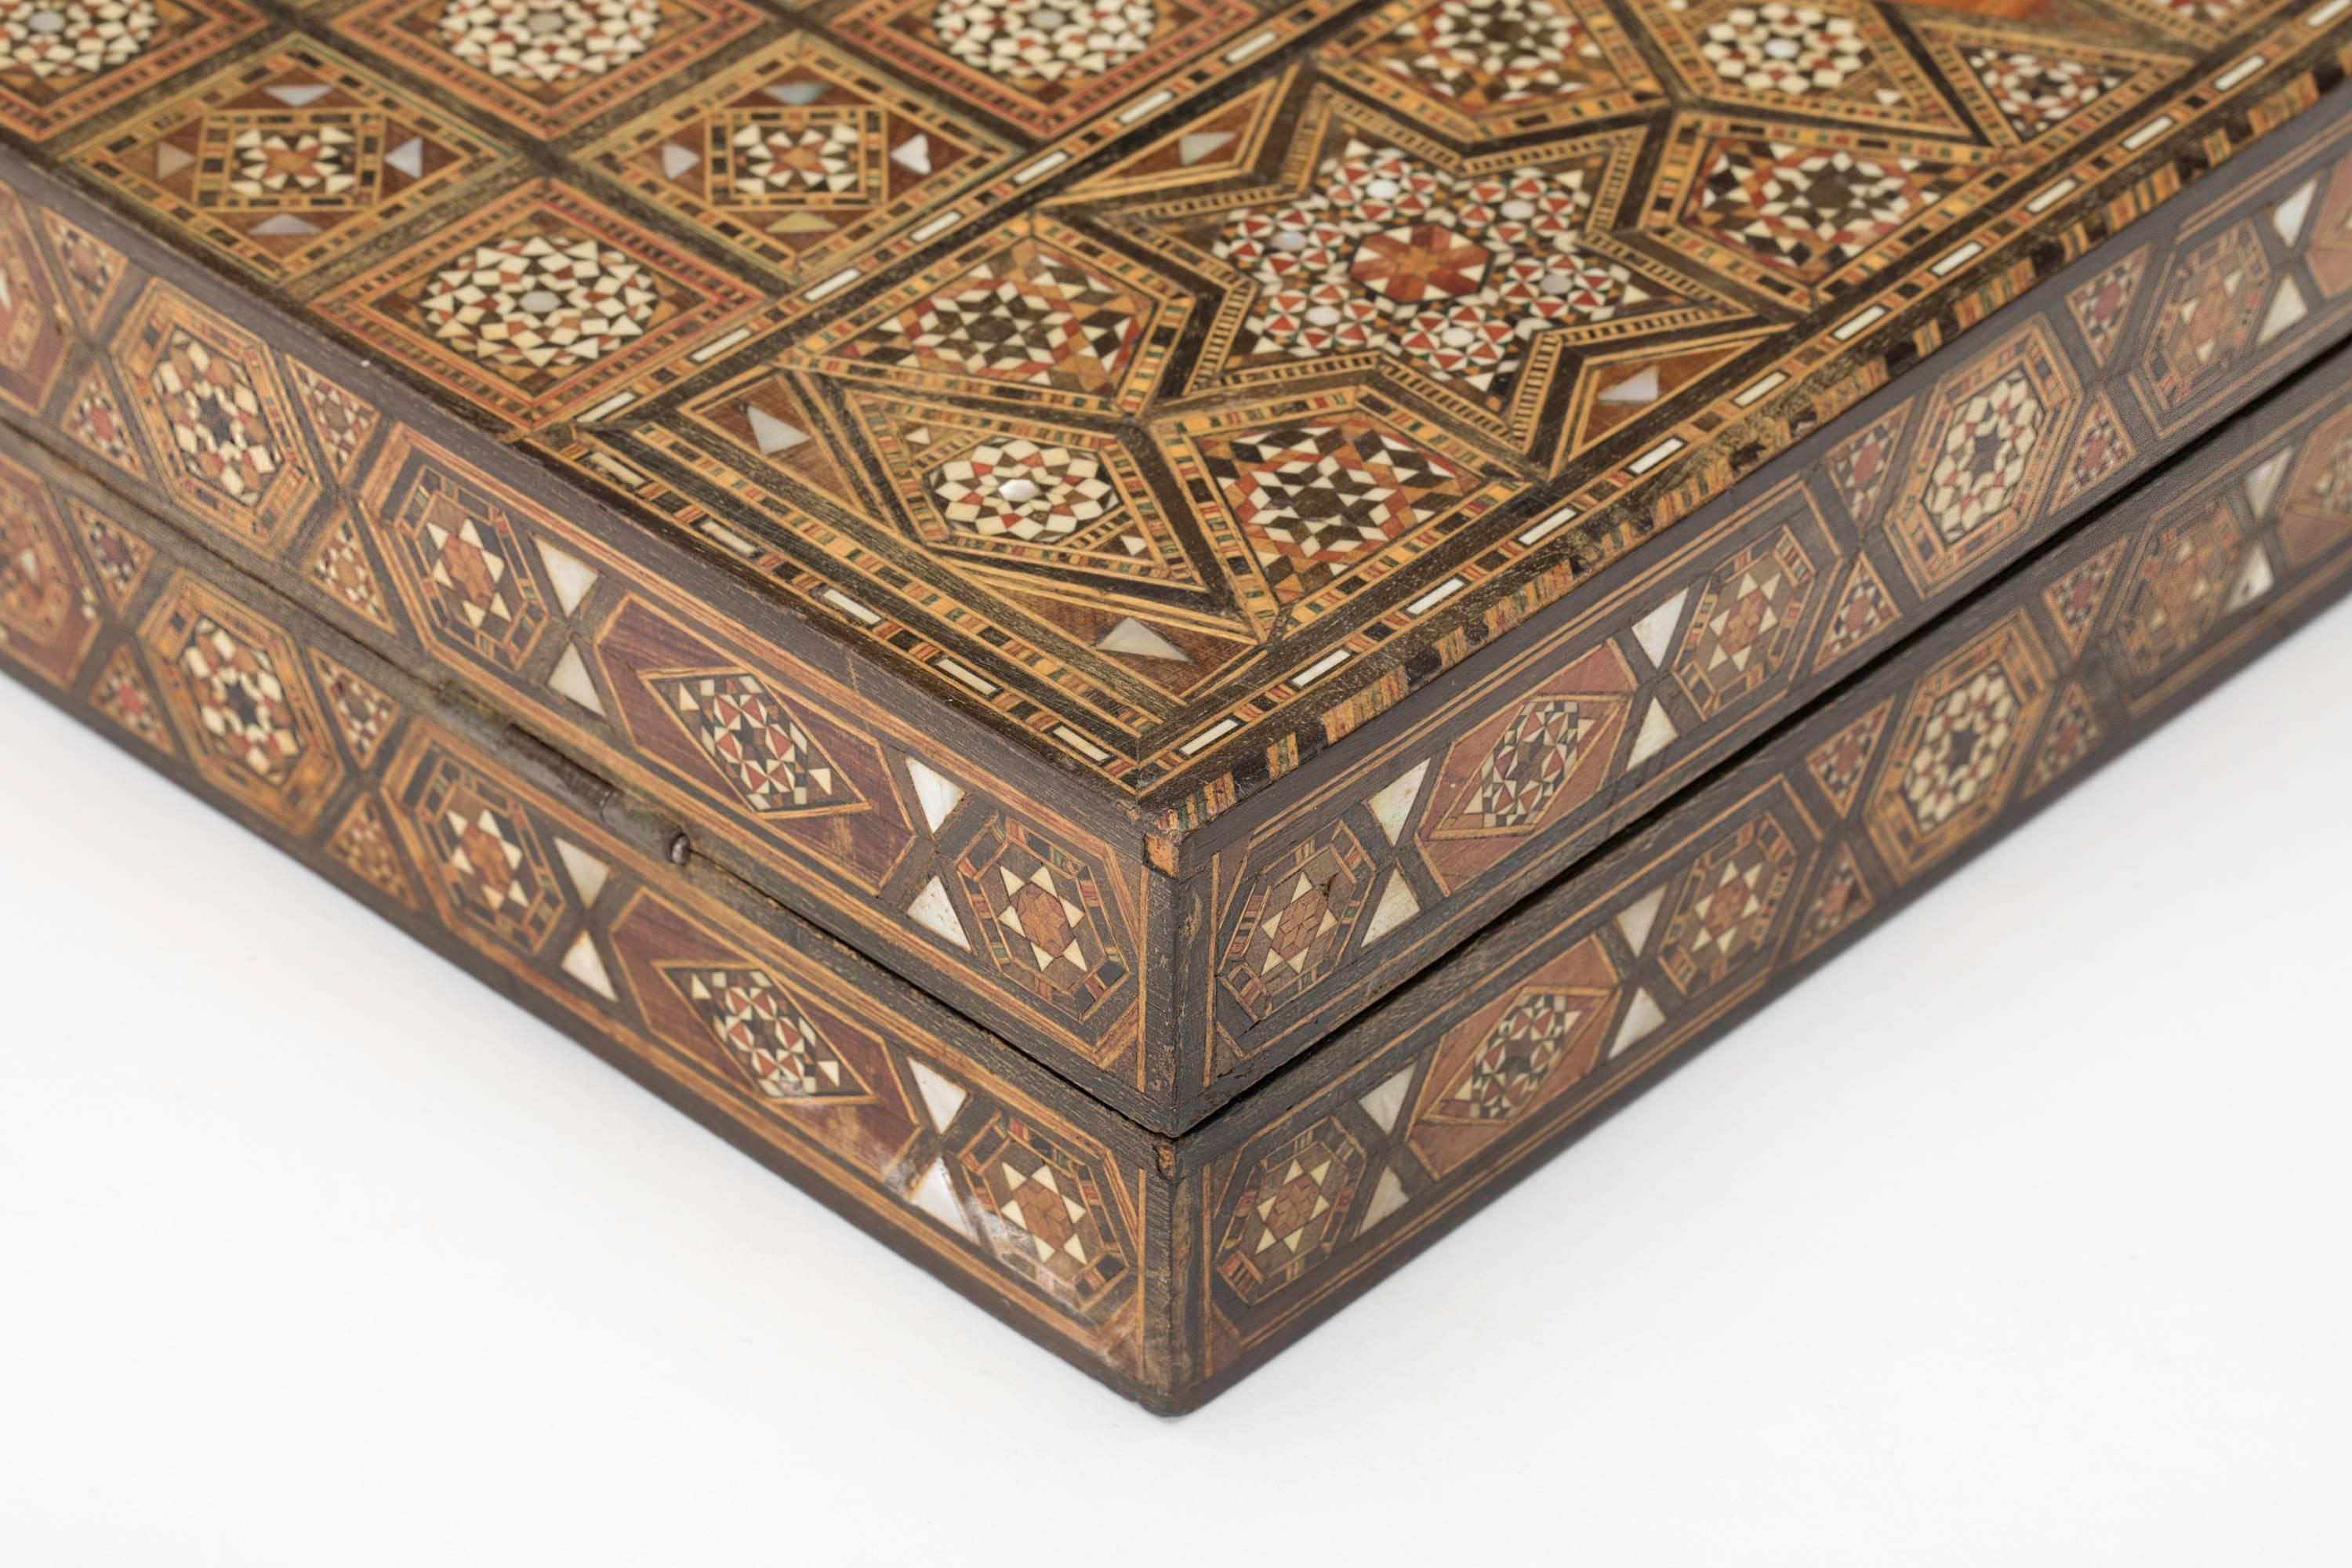 Mosaic Syrian Inlaid Backgammon Game Board